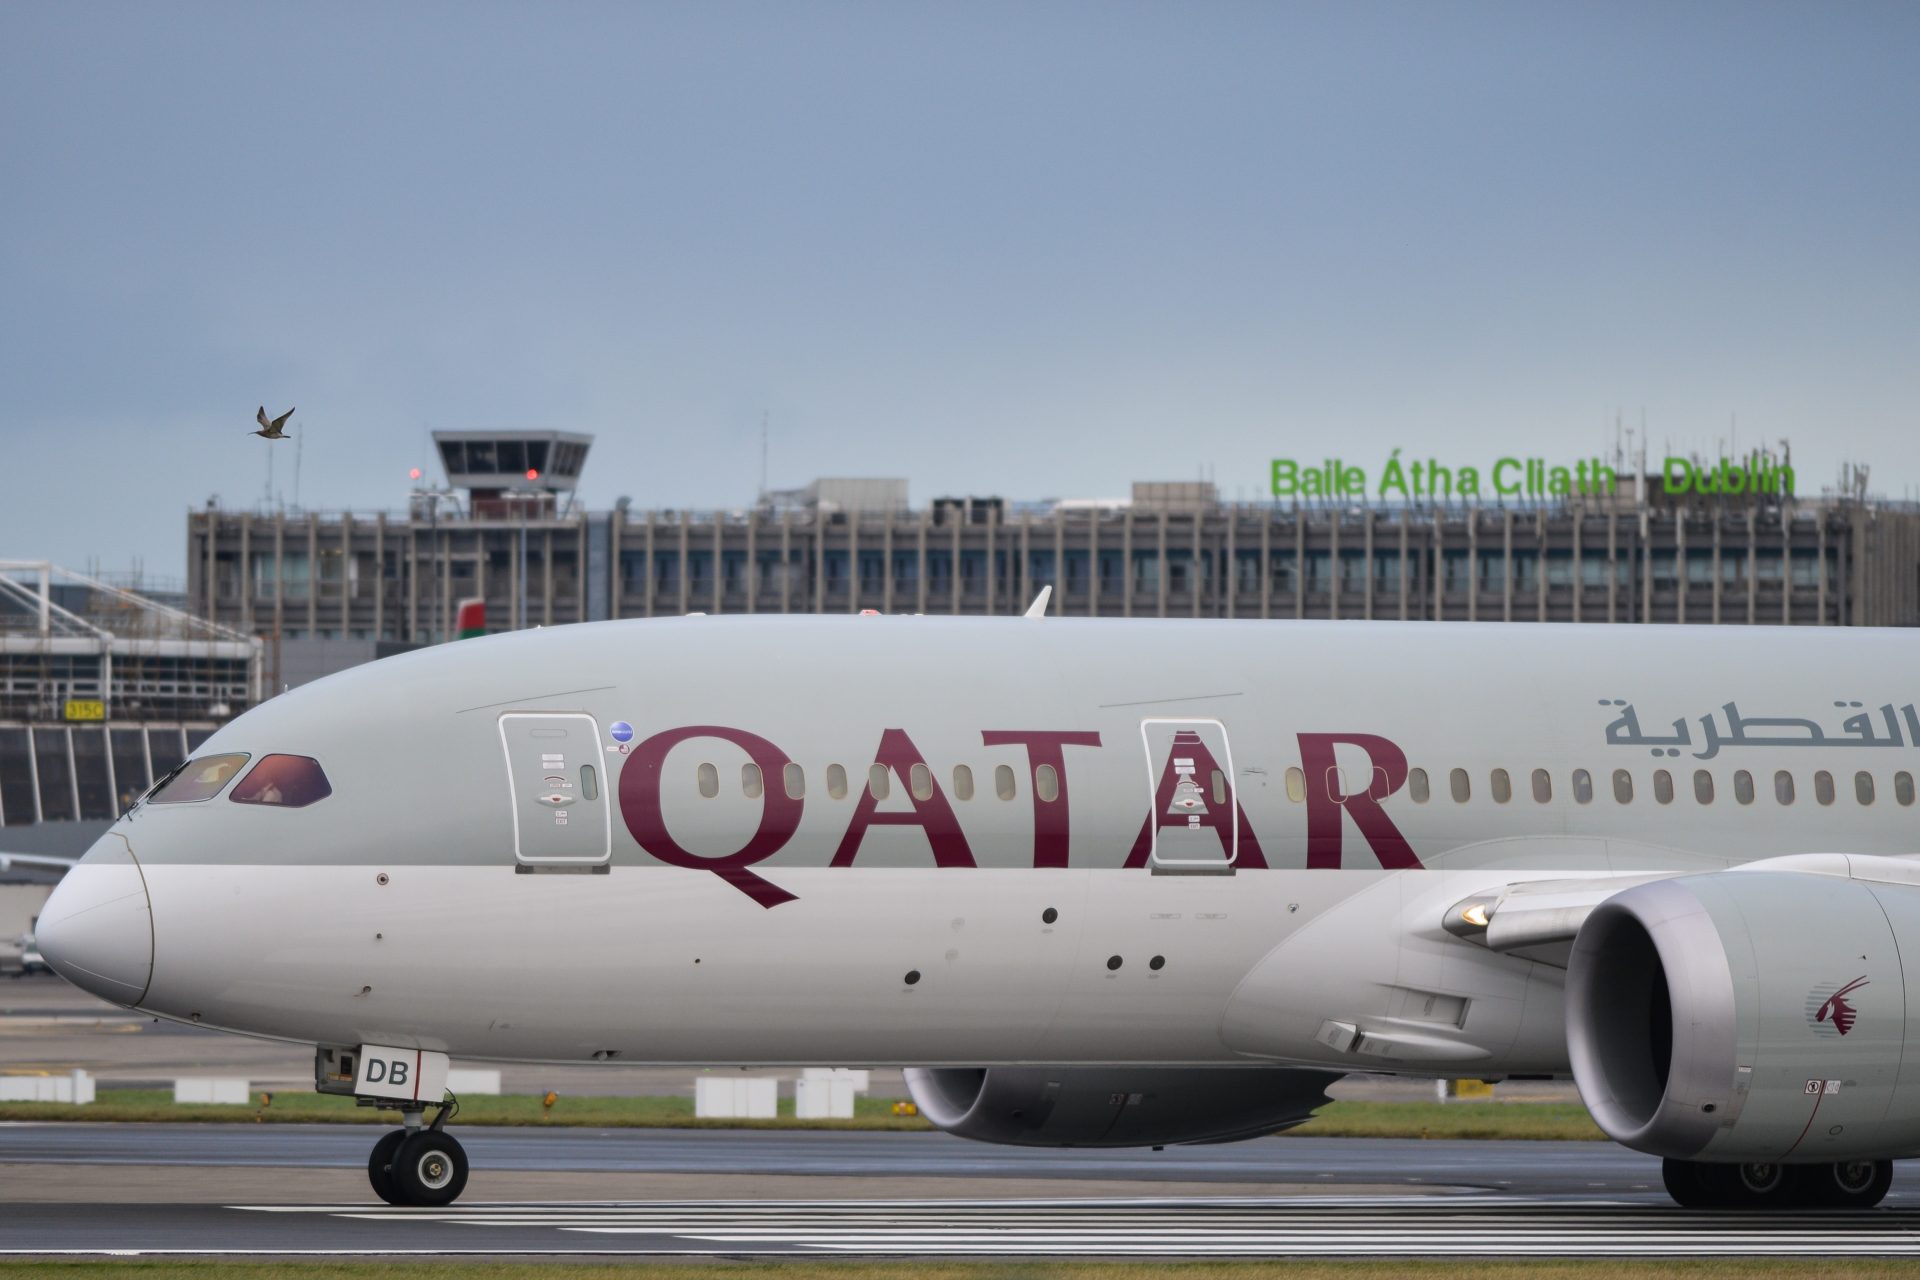 Les turbulences frappent à nouveau : 12 blessés sur un vol du Qatar à destination de Dublin